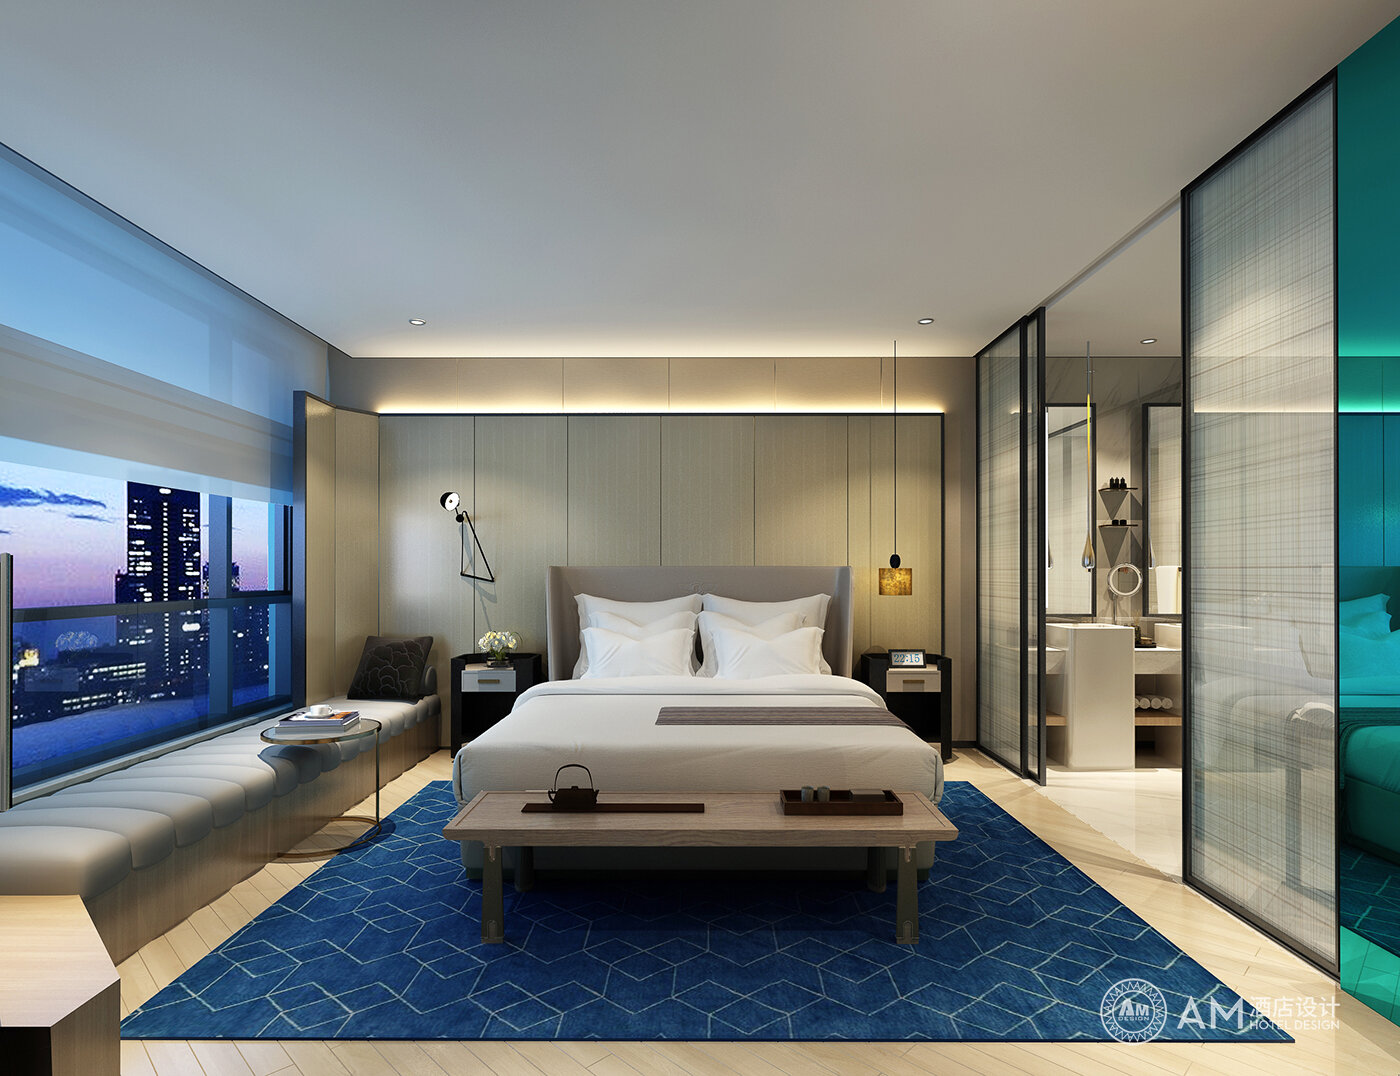 Am | guest room design of Xi'an Jinpan Hotel